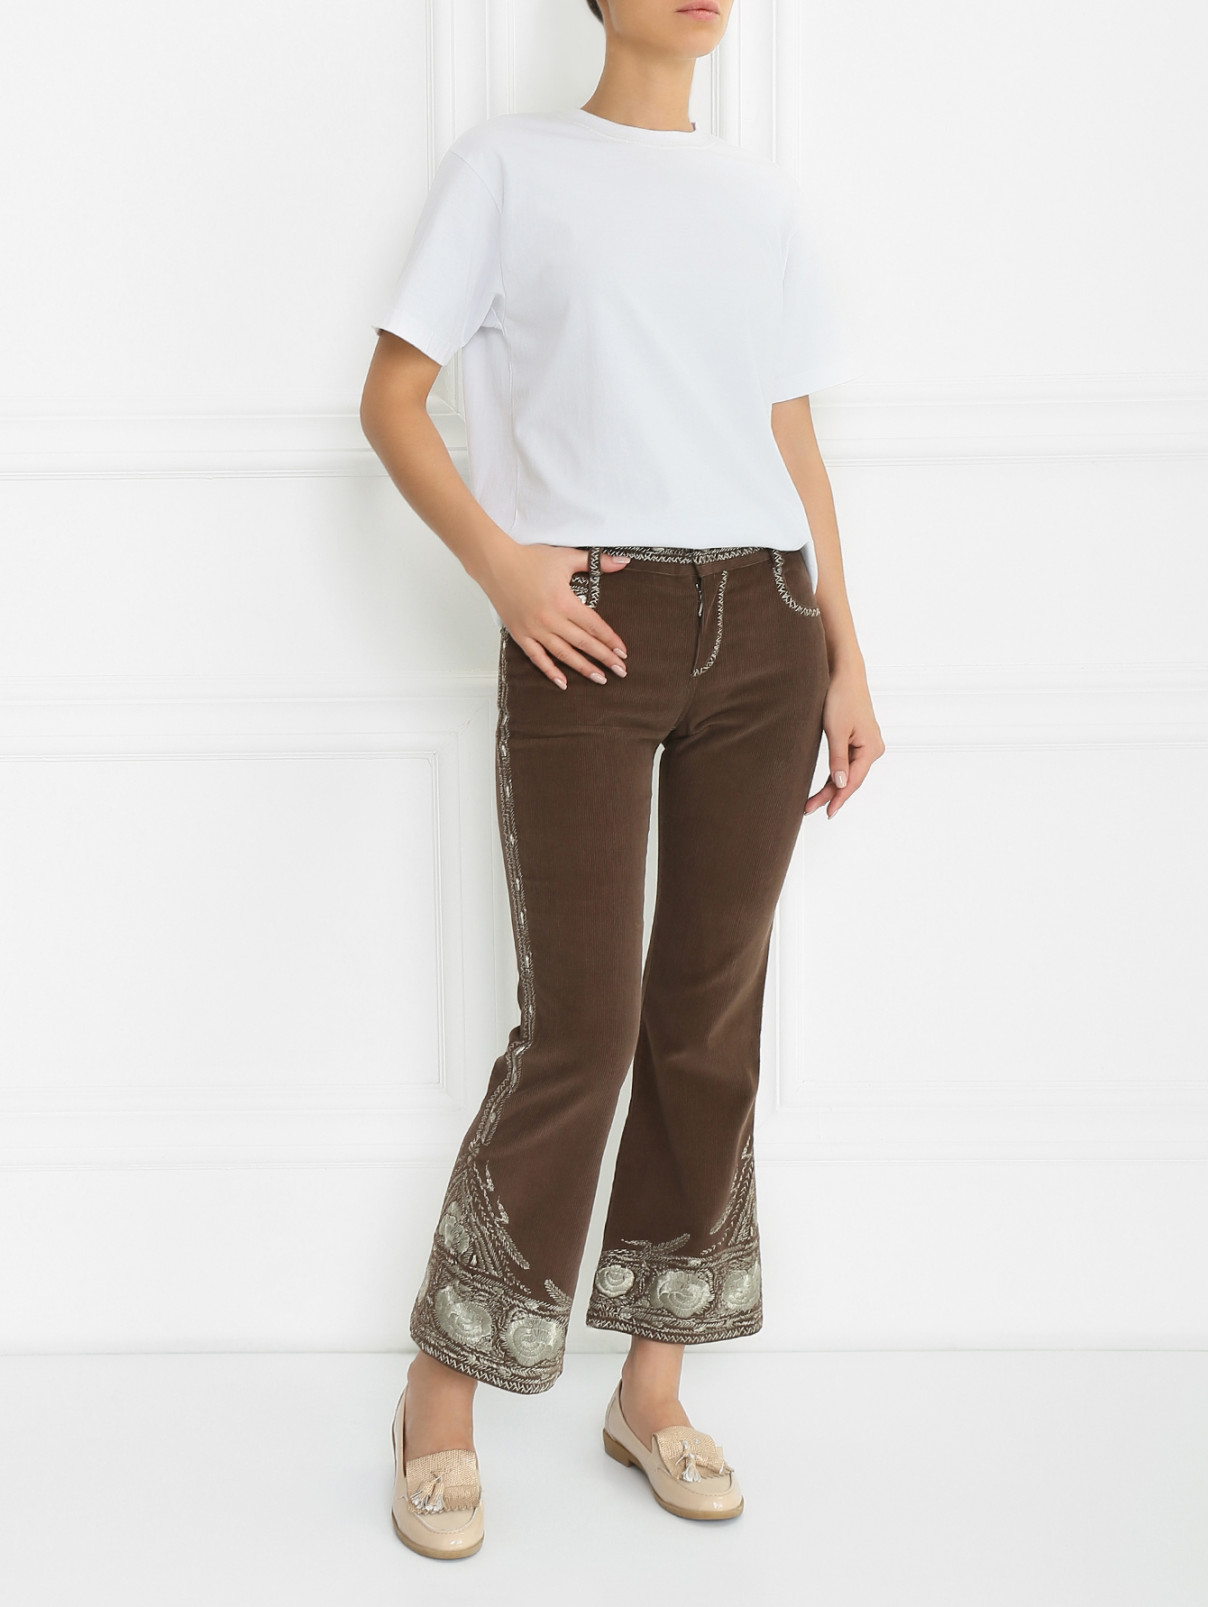 Укороченные брюки-клеш с декором Jean Paul Gaultier  –  Модель Общий вид  – Цвет:  Коричневый